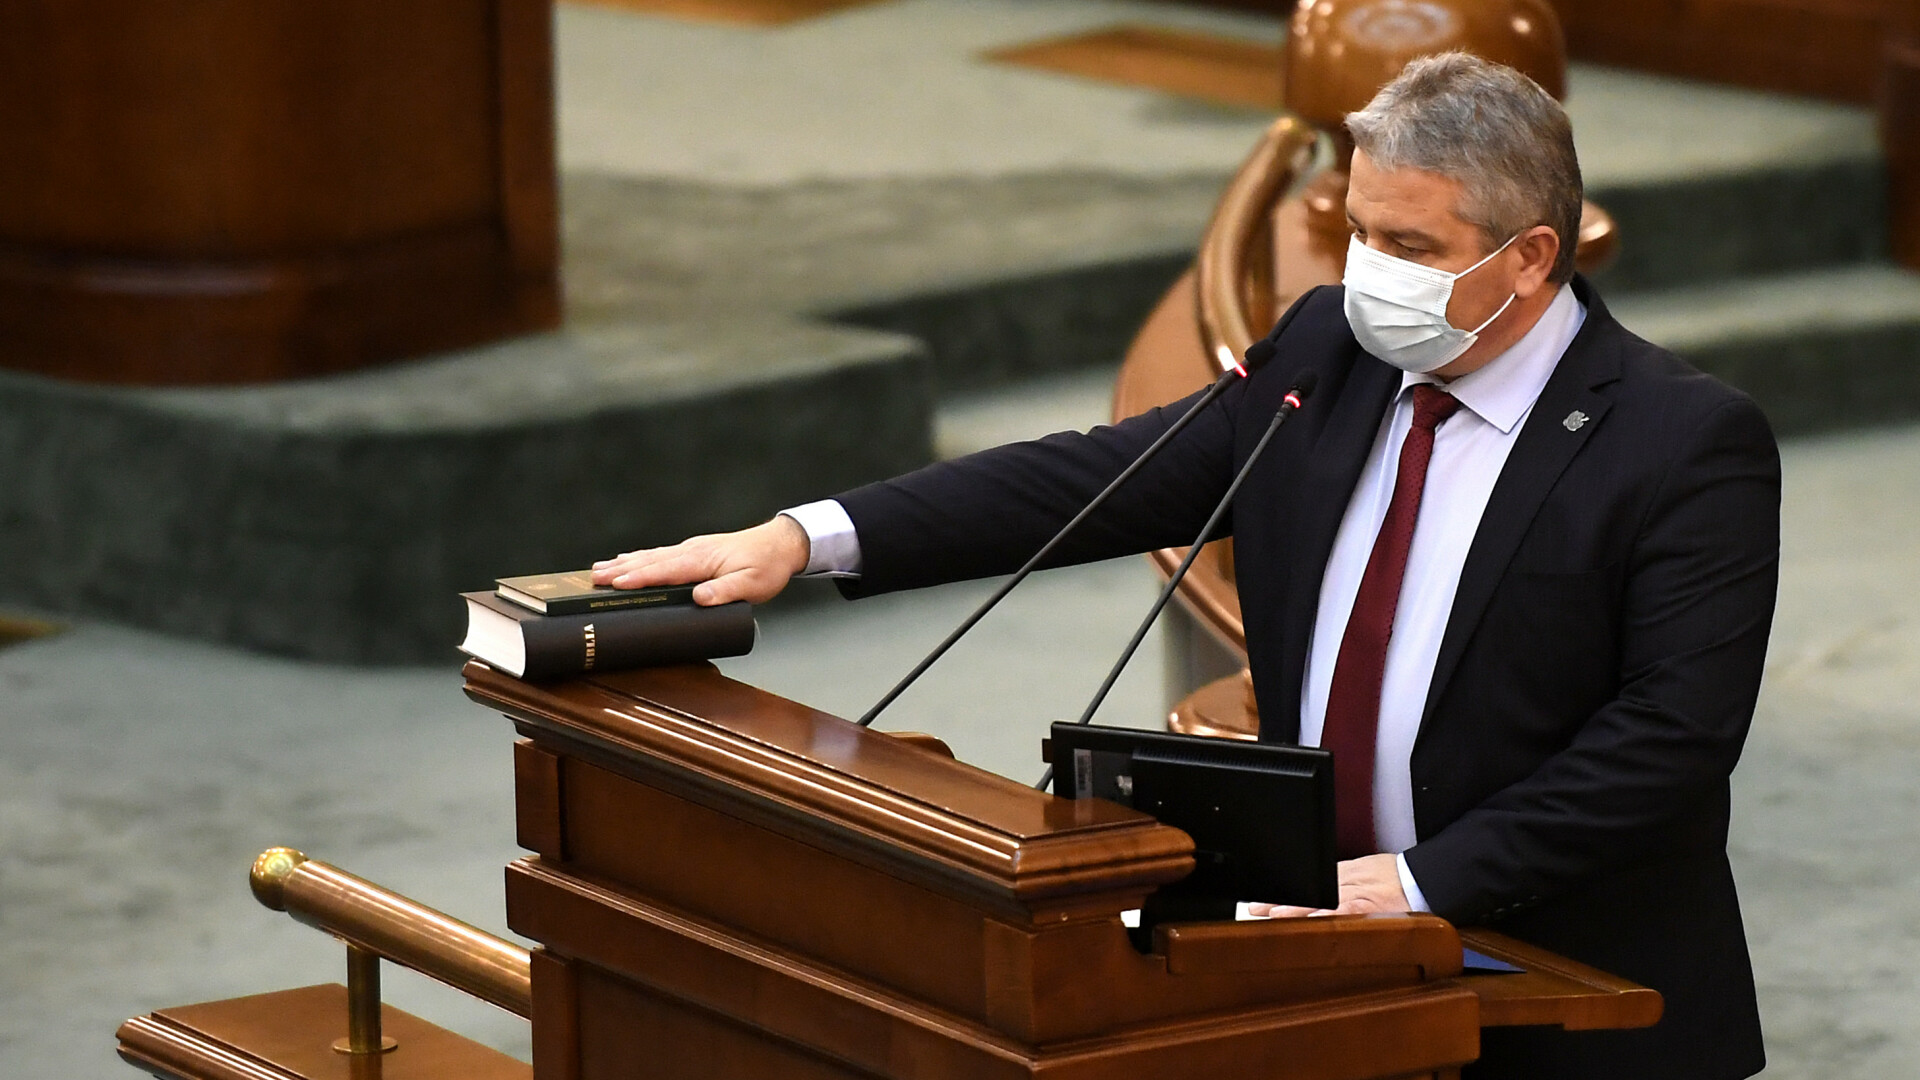 Avizarea urmării penale pentru senatorul Florian Bodog, discutată luni în Comisia Juridică